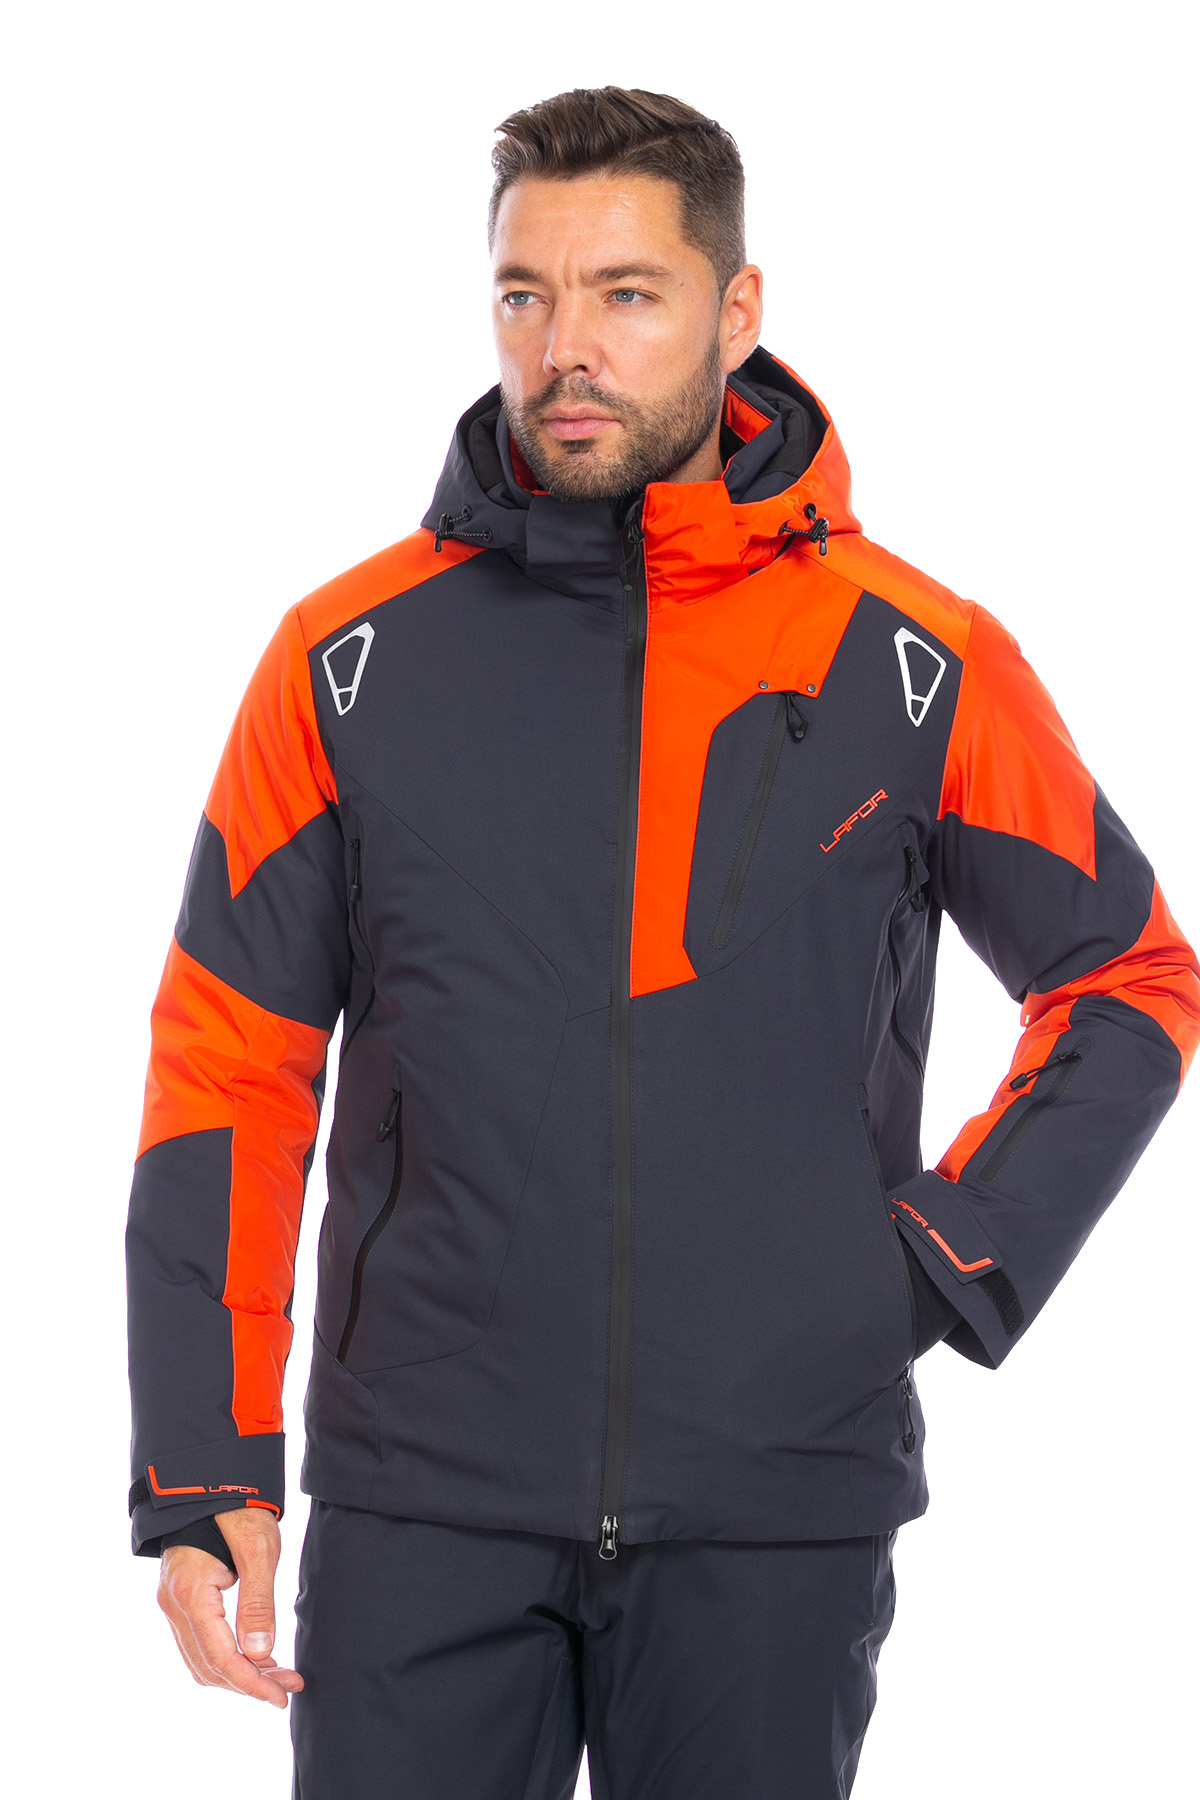 Мужская горнолыжная Куртка Lafor Темно-серый, 767053 (52, xl)